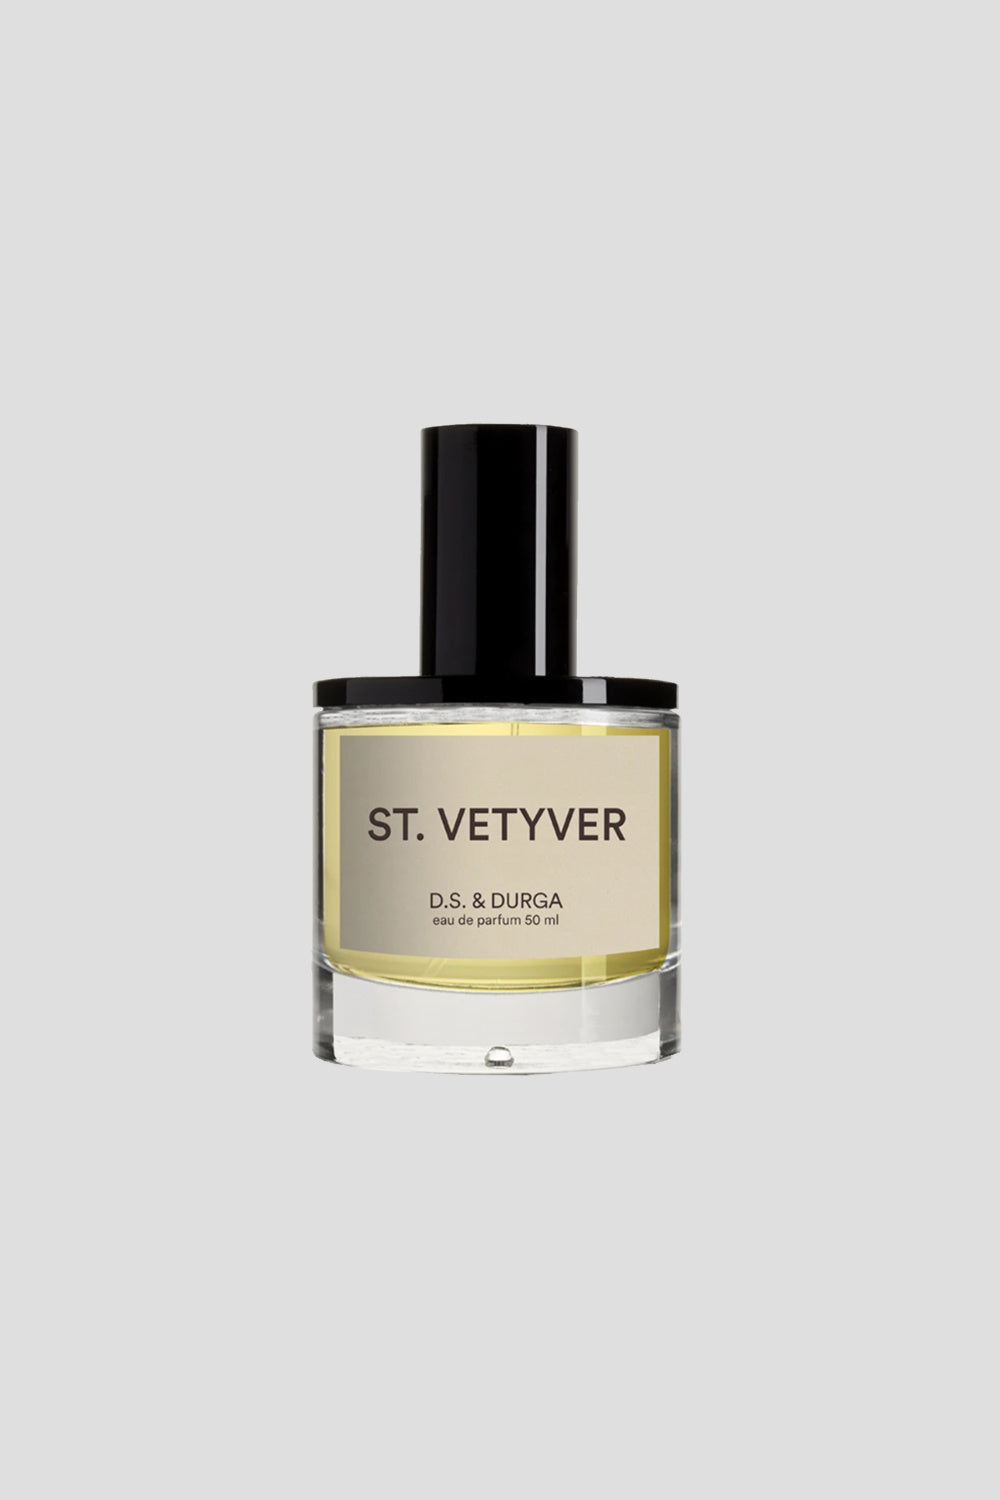 St Vetyver Eau de Parfum